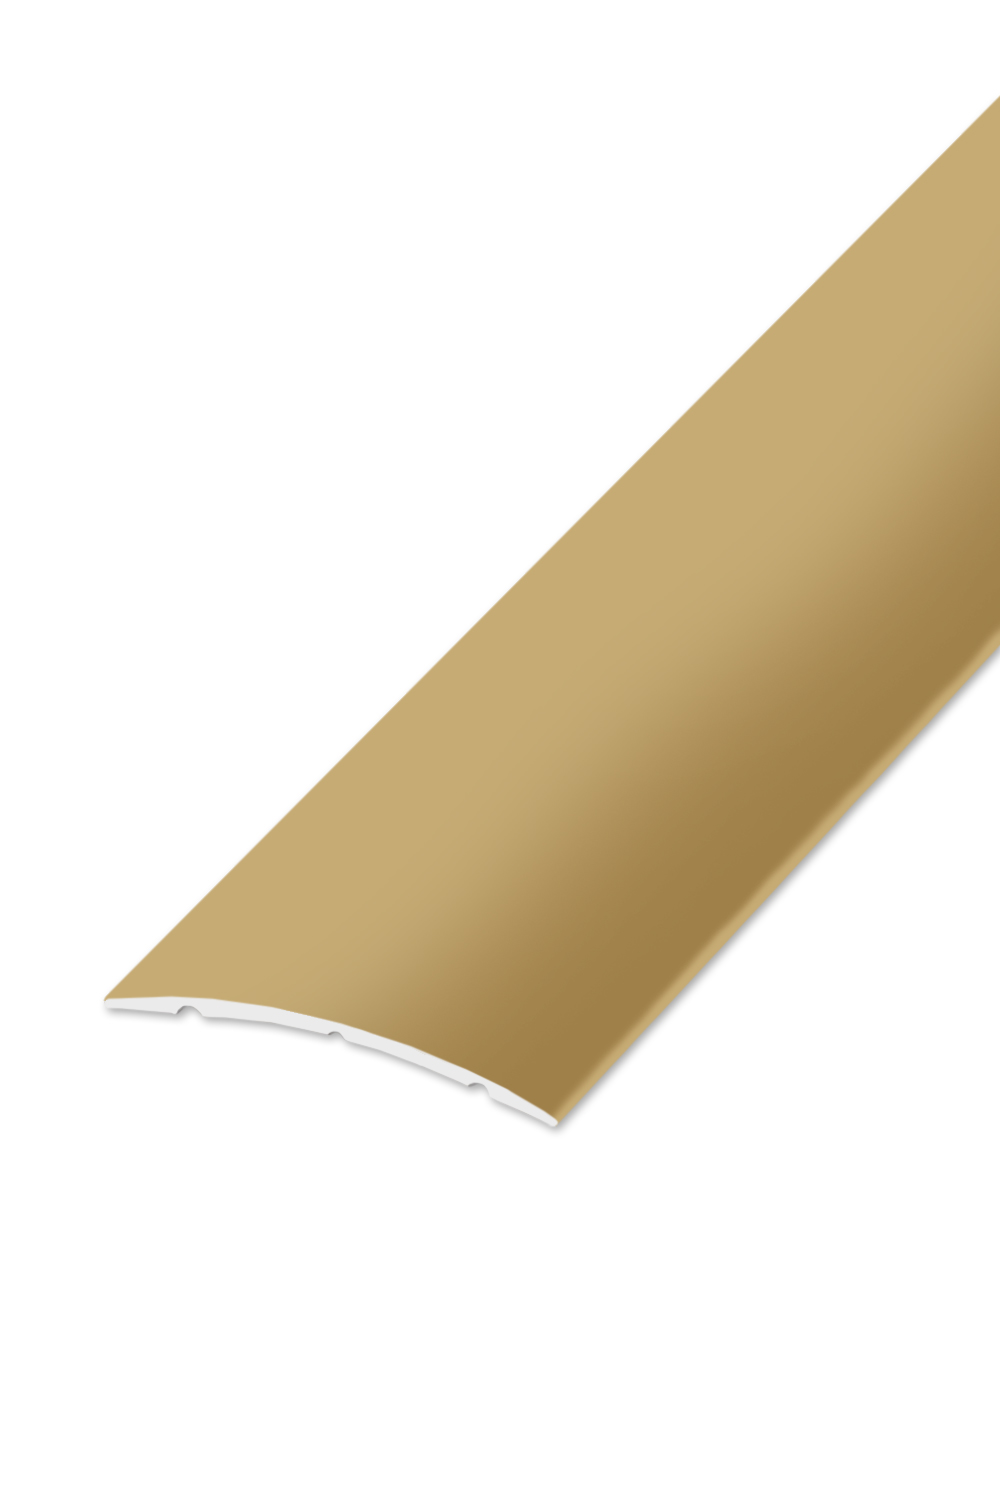 Přechodová lišta STANDARD 32 - Zlatá 90 cm